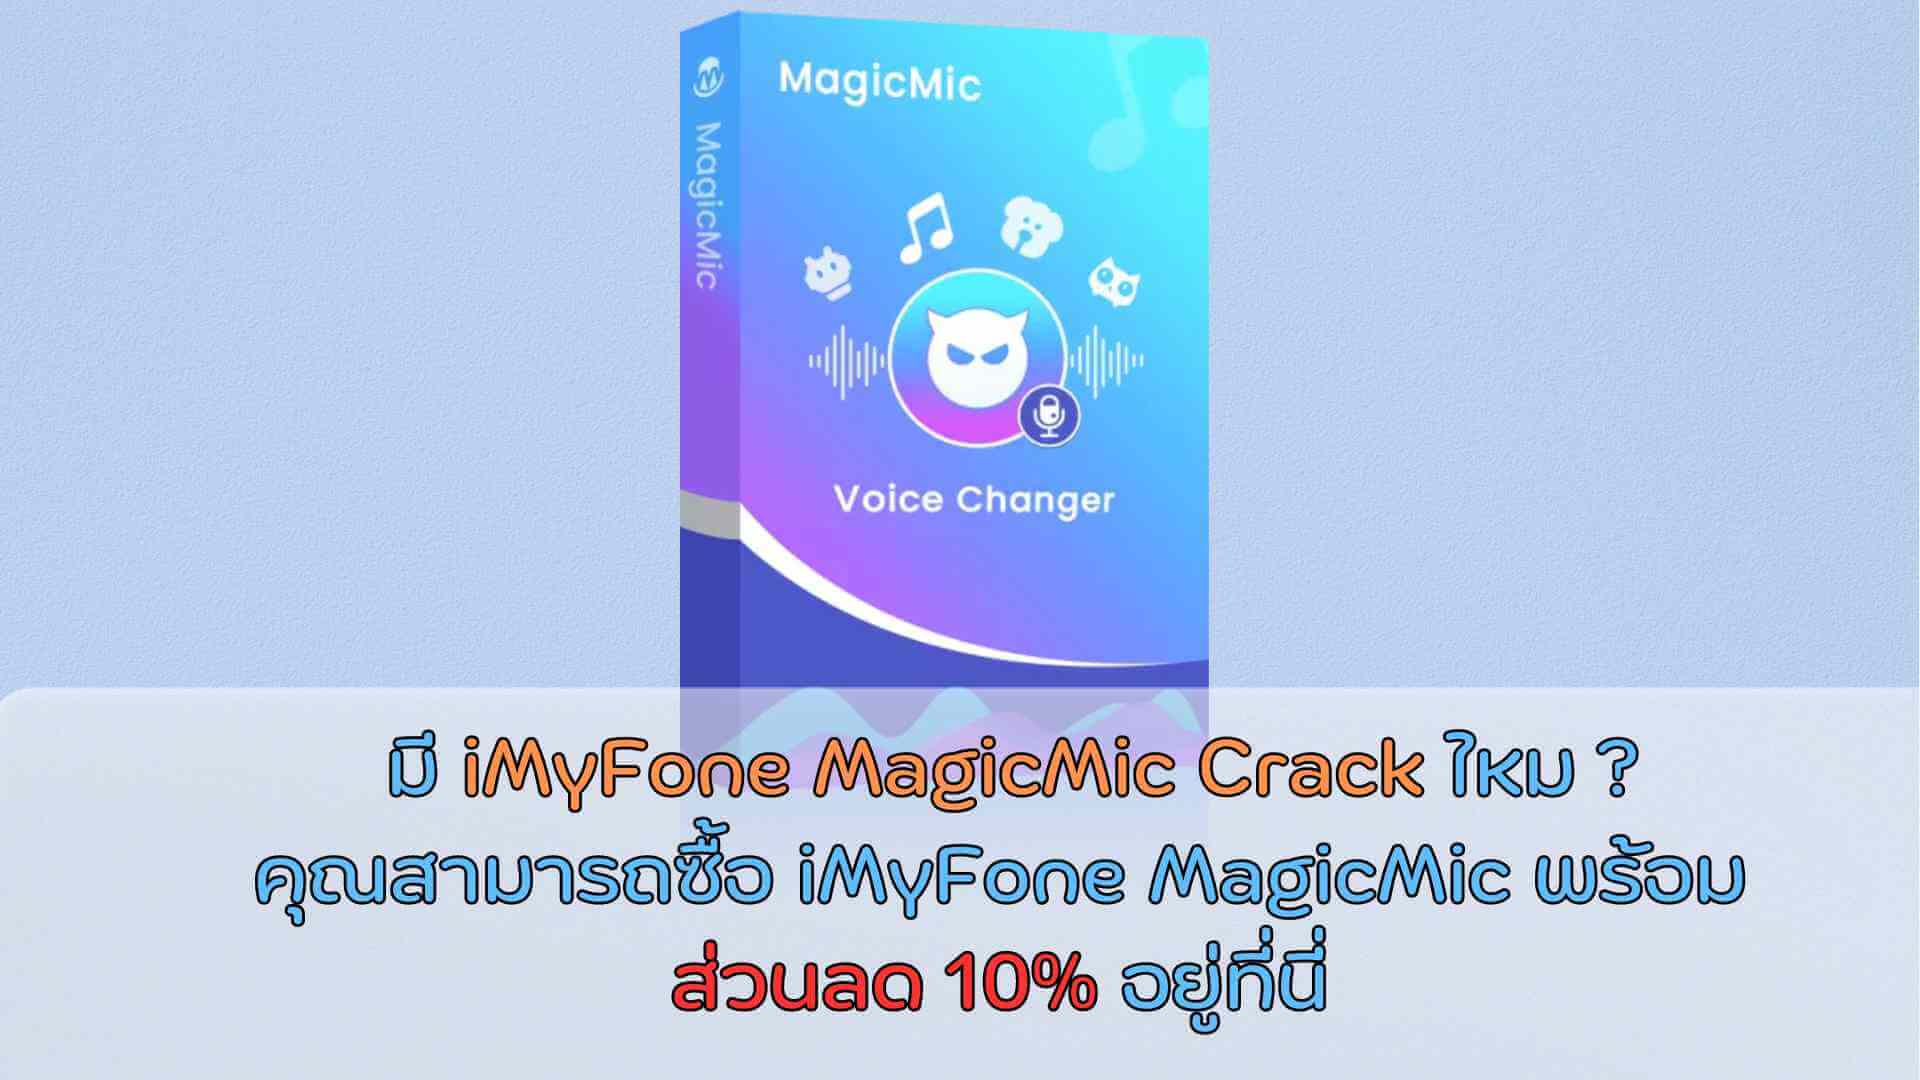 ยังคงมองหา iMyFone MagicMic Crack อยู่ใช่ไหม คุณสามารถซื้อ iMyFone MagicMic พร้อมส่วนลด 10% อยู่ที่นี่